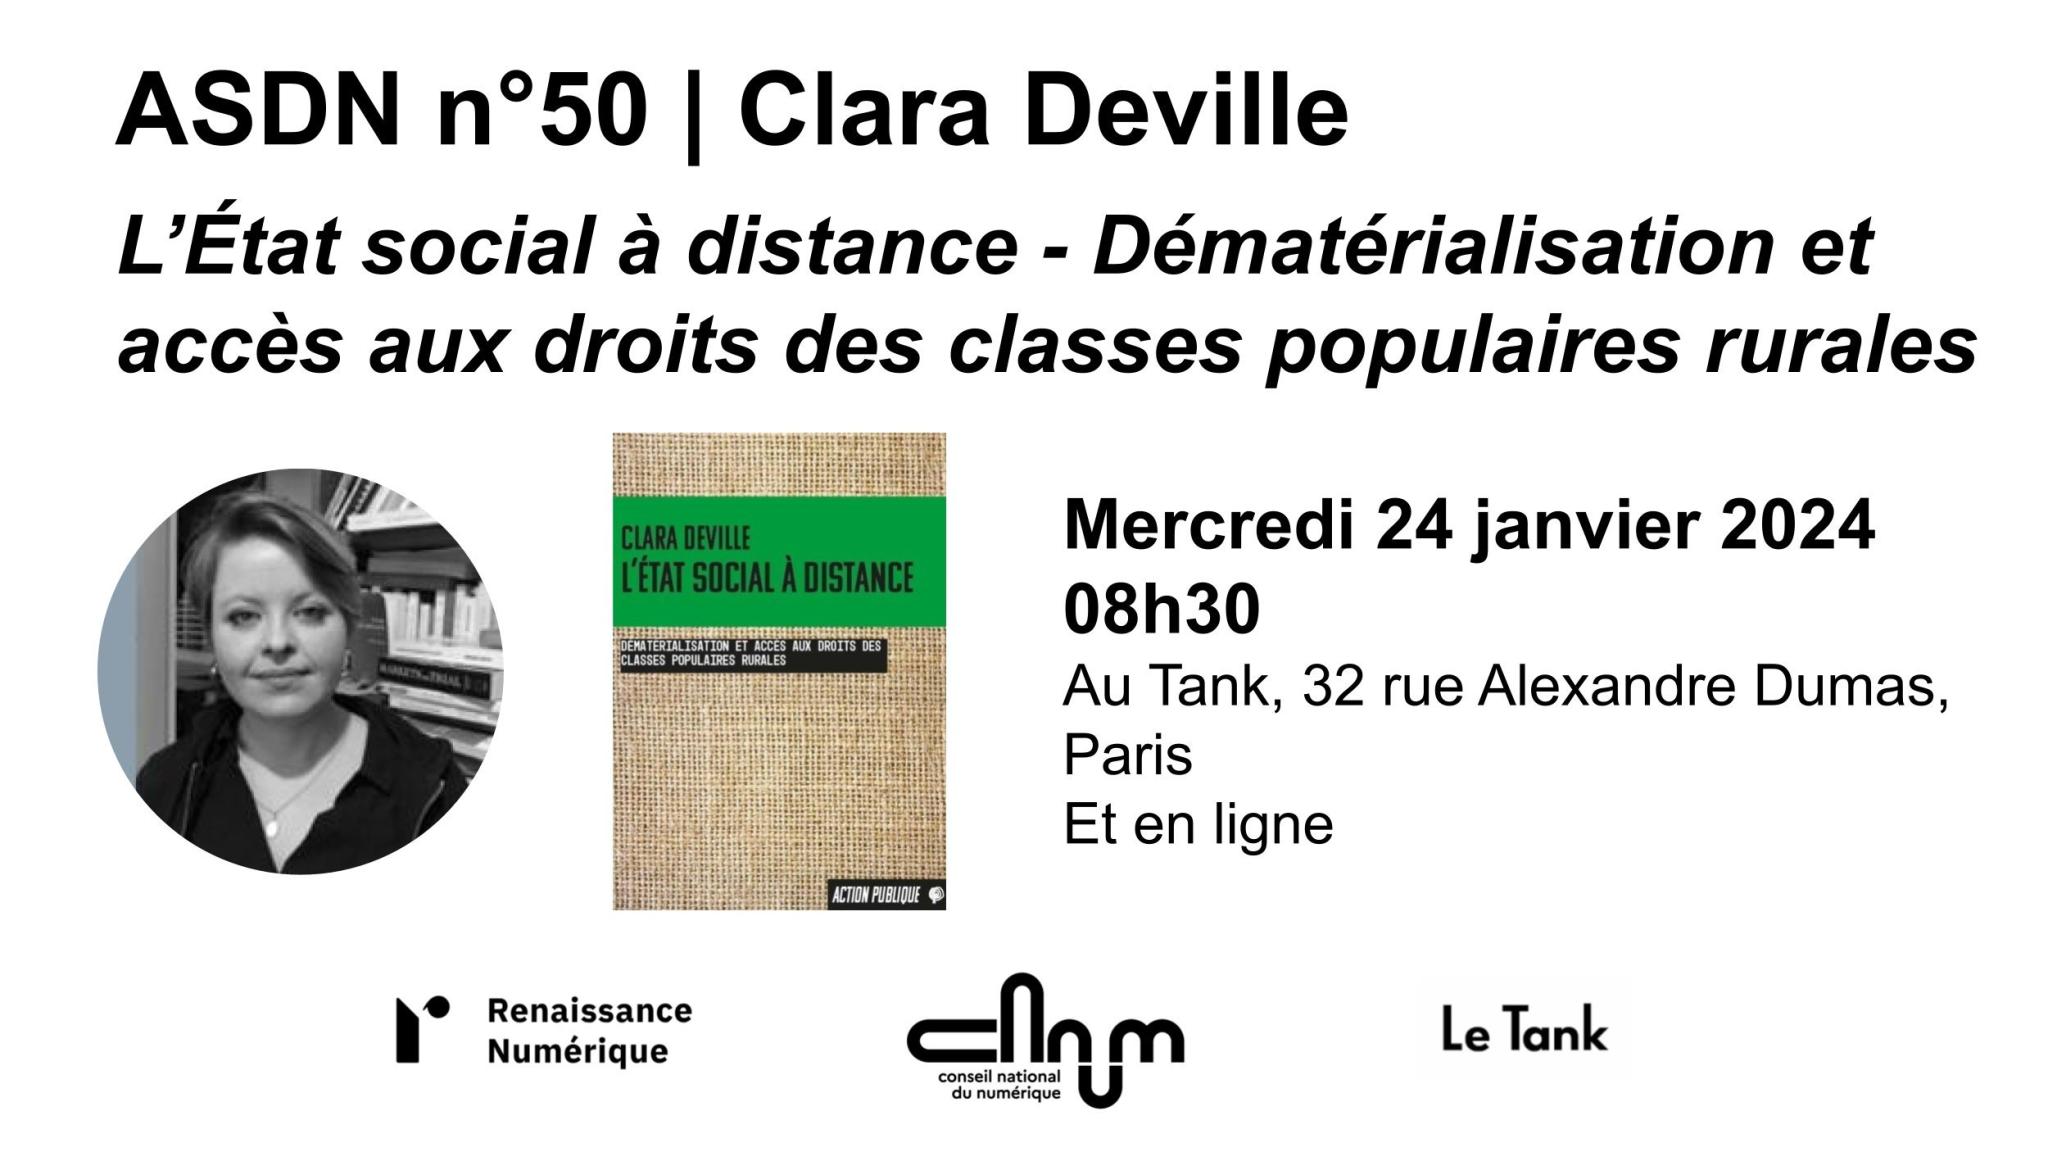 Rencontre avec Clara Deville autour de son livre "L'Etat social à distance - dématérialisation et accès aux droits des classes populaires rurales" le mercredi 24 janvier à 8h30 au Tank (32 rue Alexandre Dumas) ou en ligne